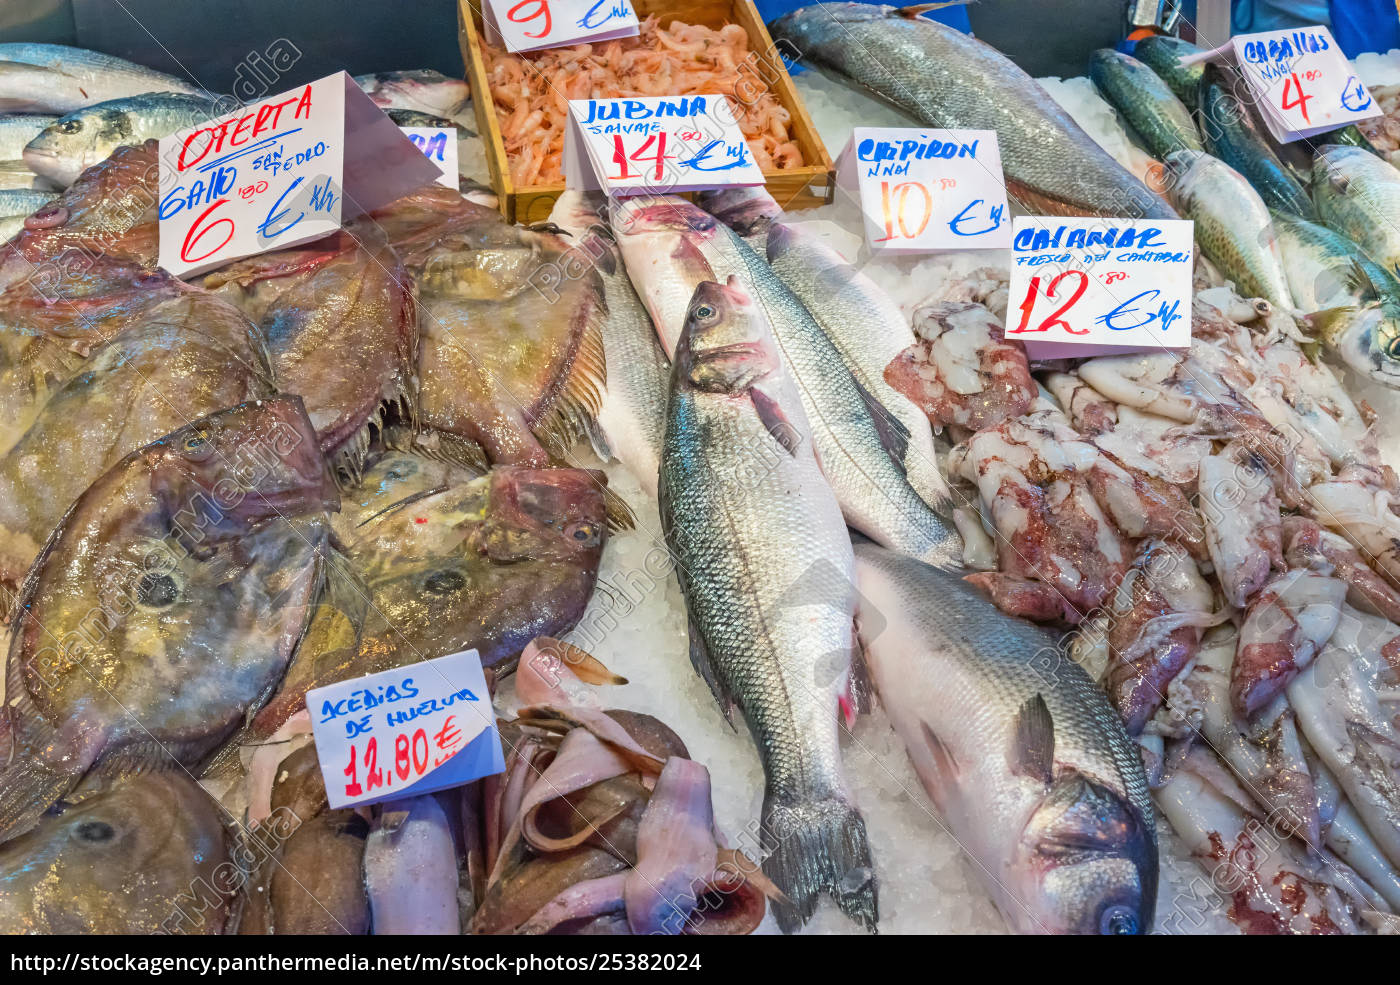 Pesce fresco in vendita in un mercato di Madrid - Stockphoto #25382024